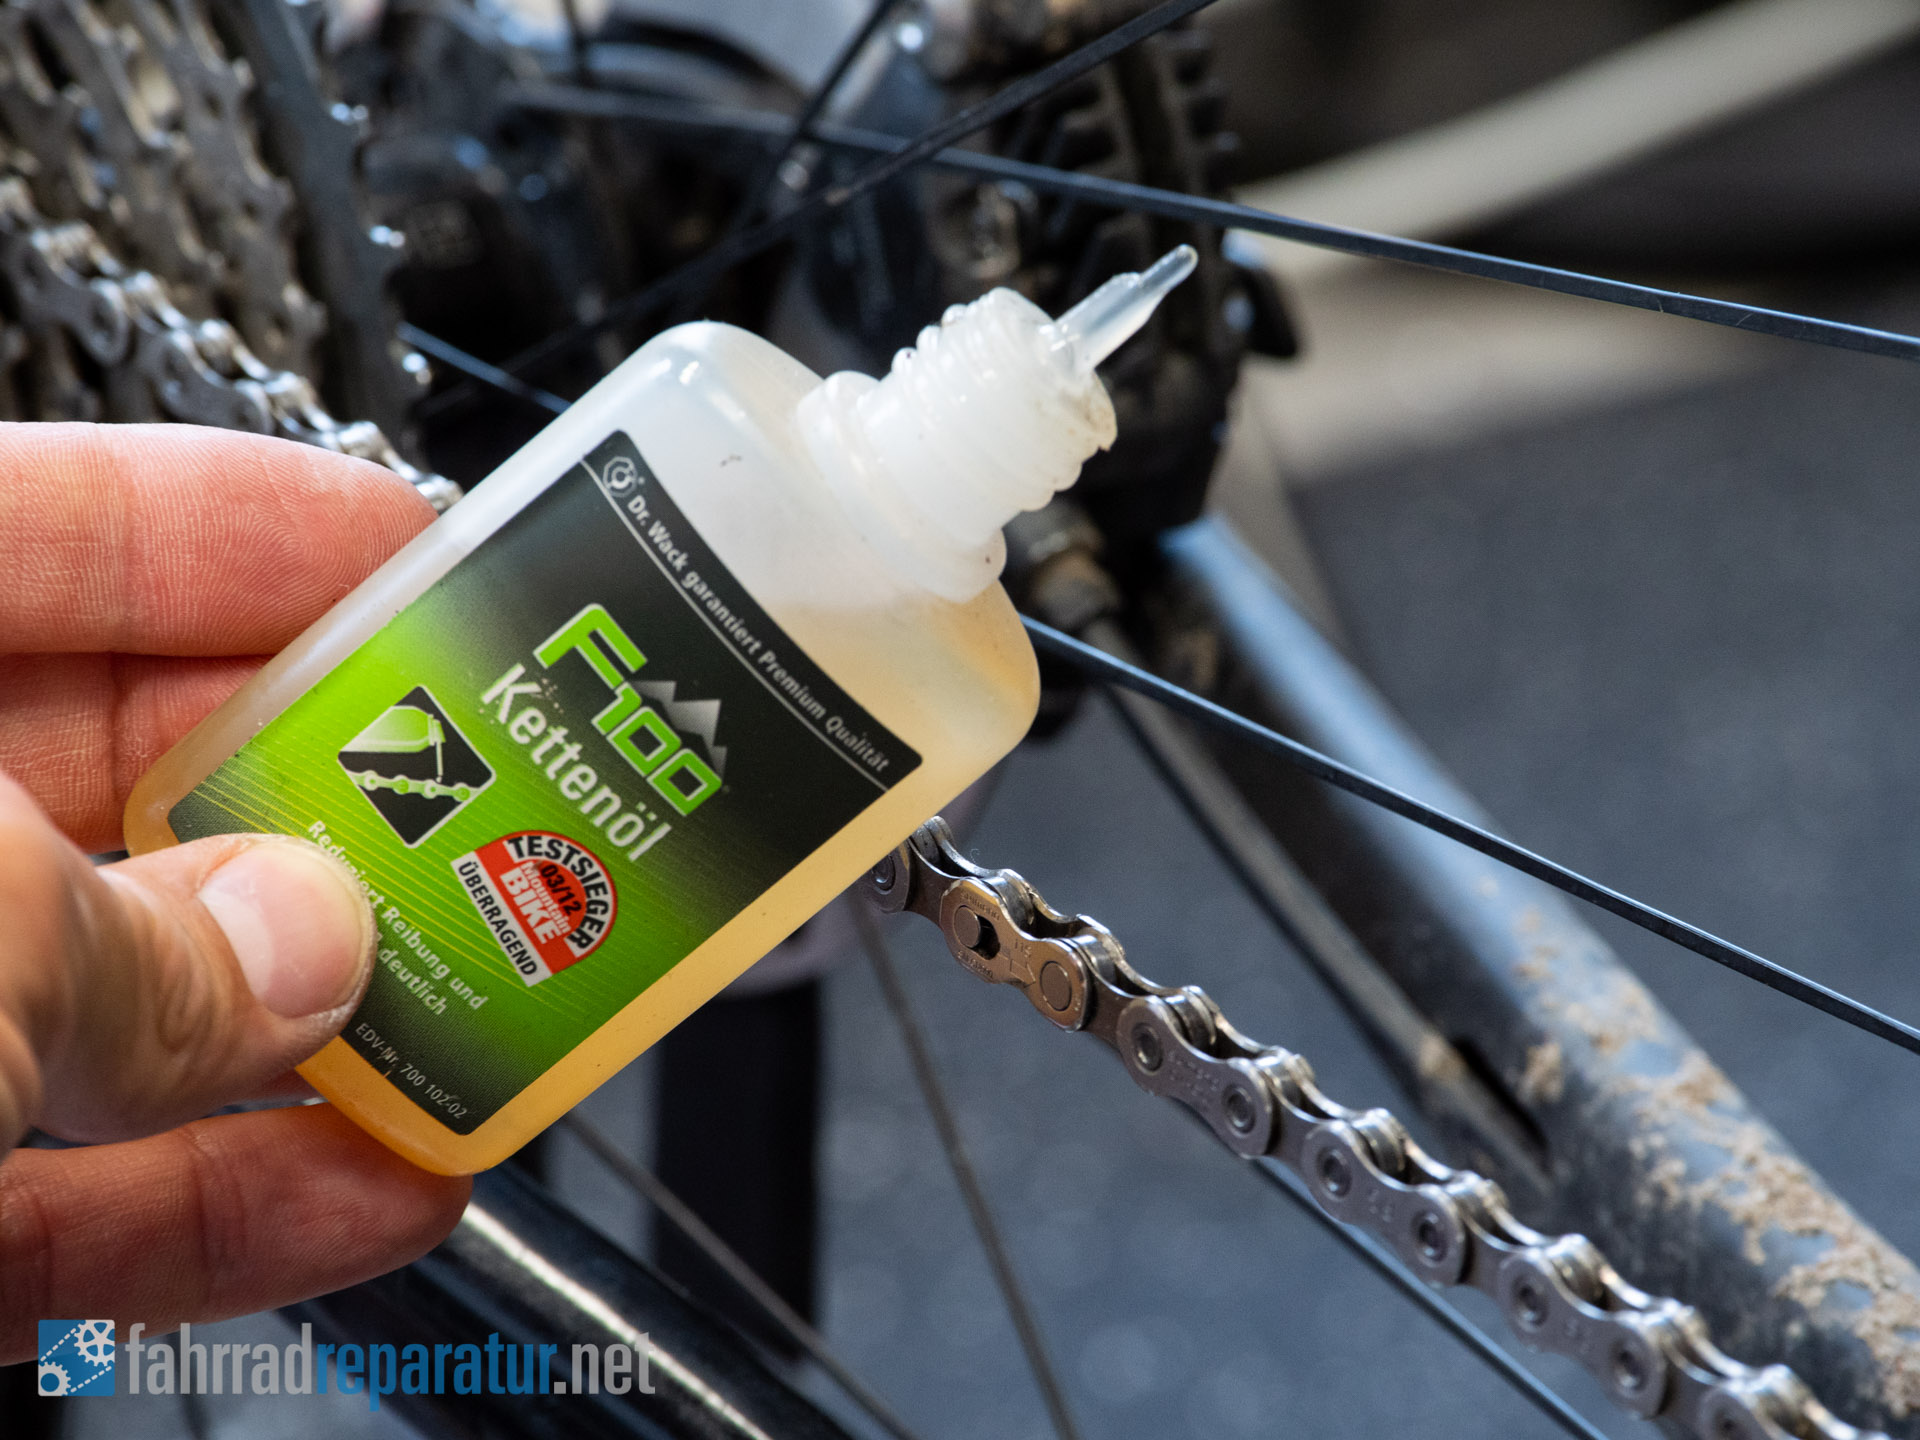 Fahrradkette Ölen, Fetten und Schmieren 